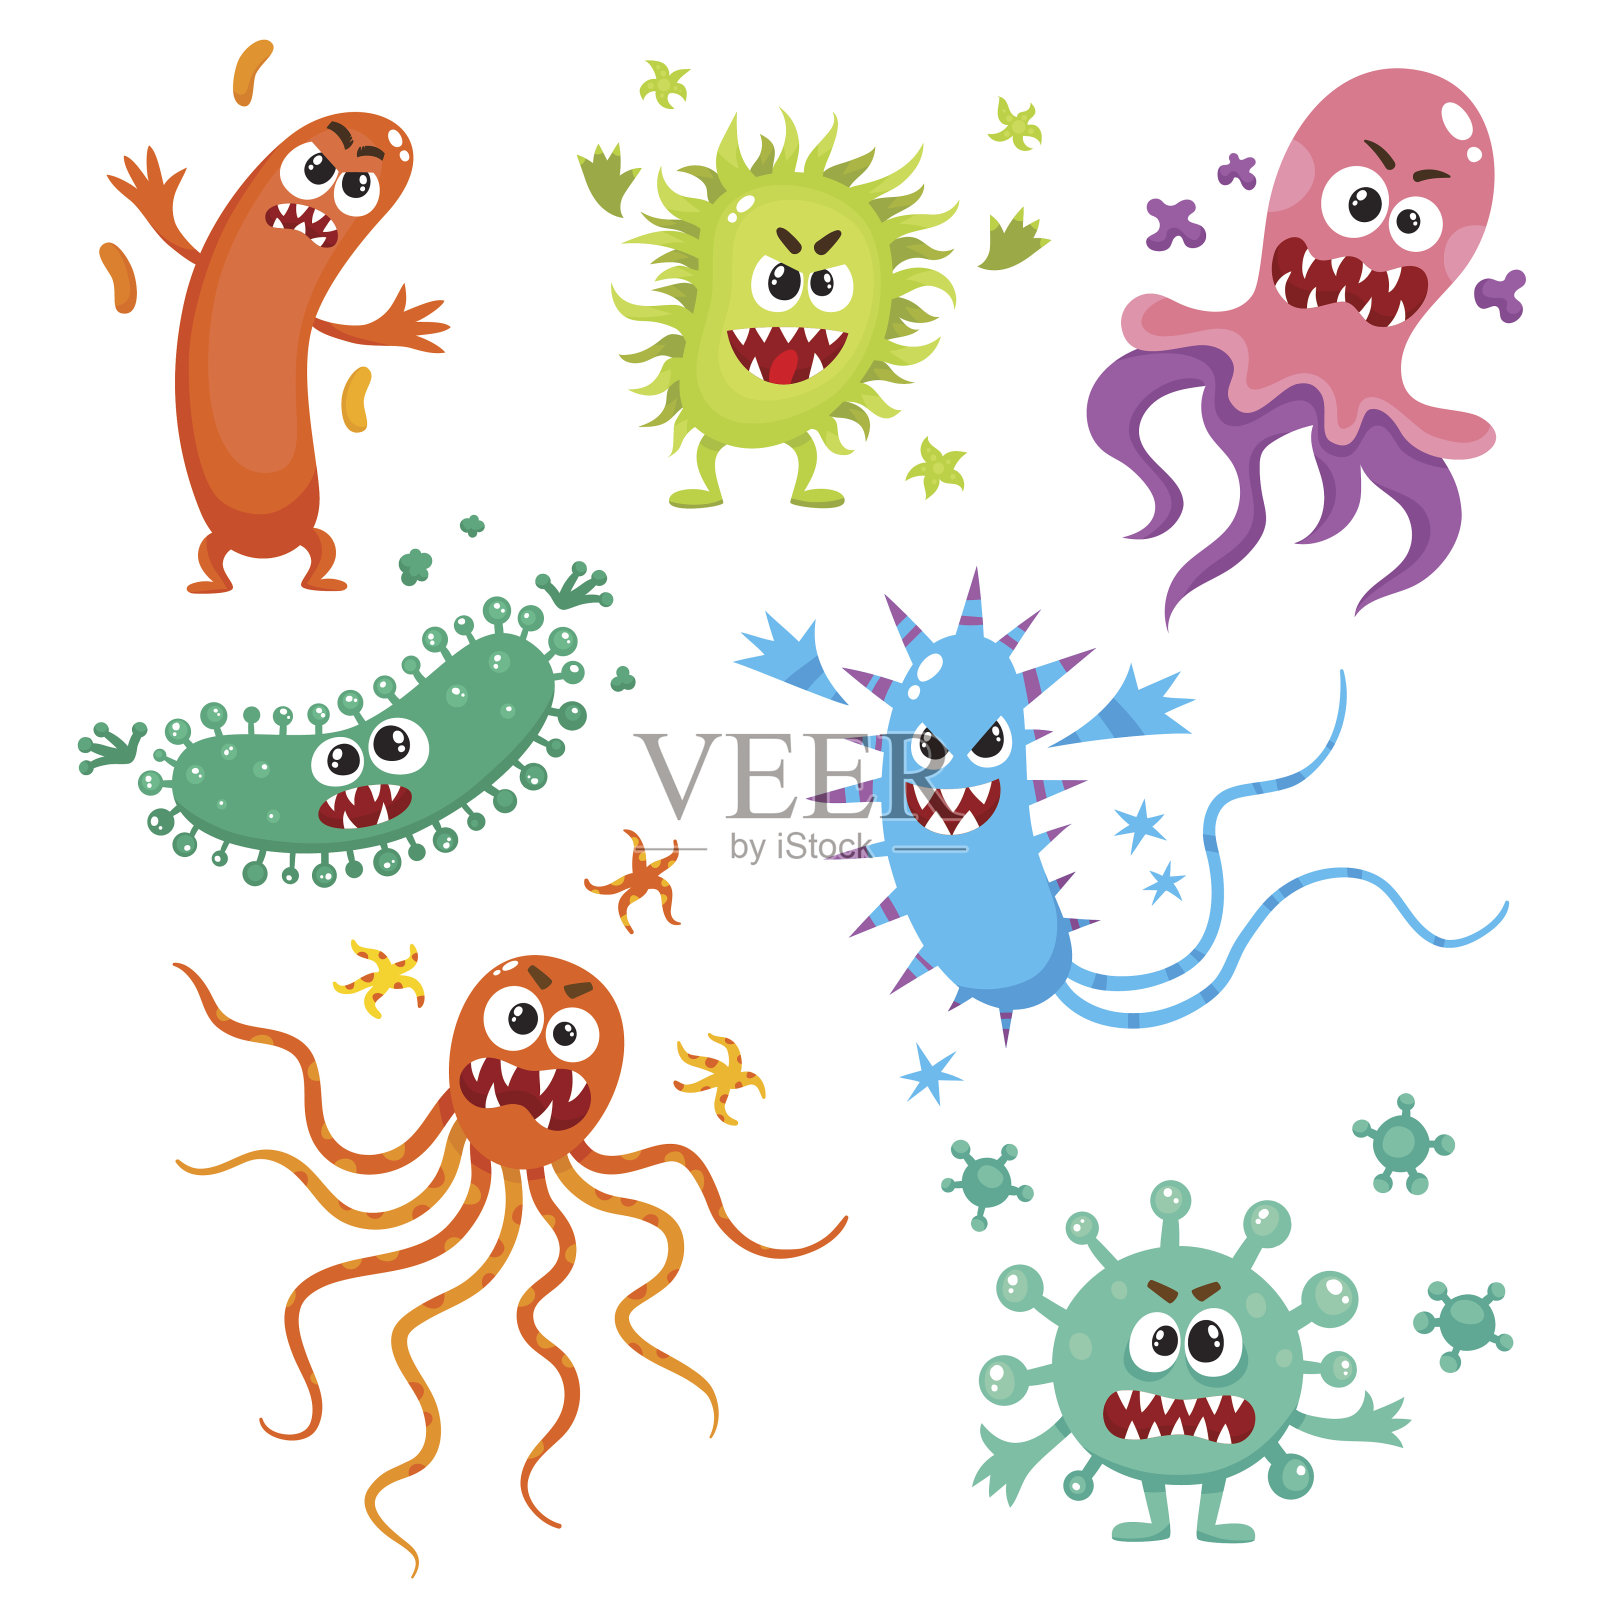 丑陋的病毒、细菌和细菌都有人类的面孔设计元素图片